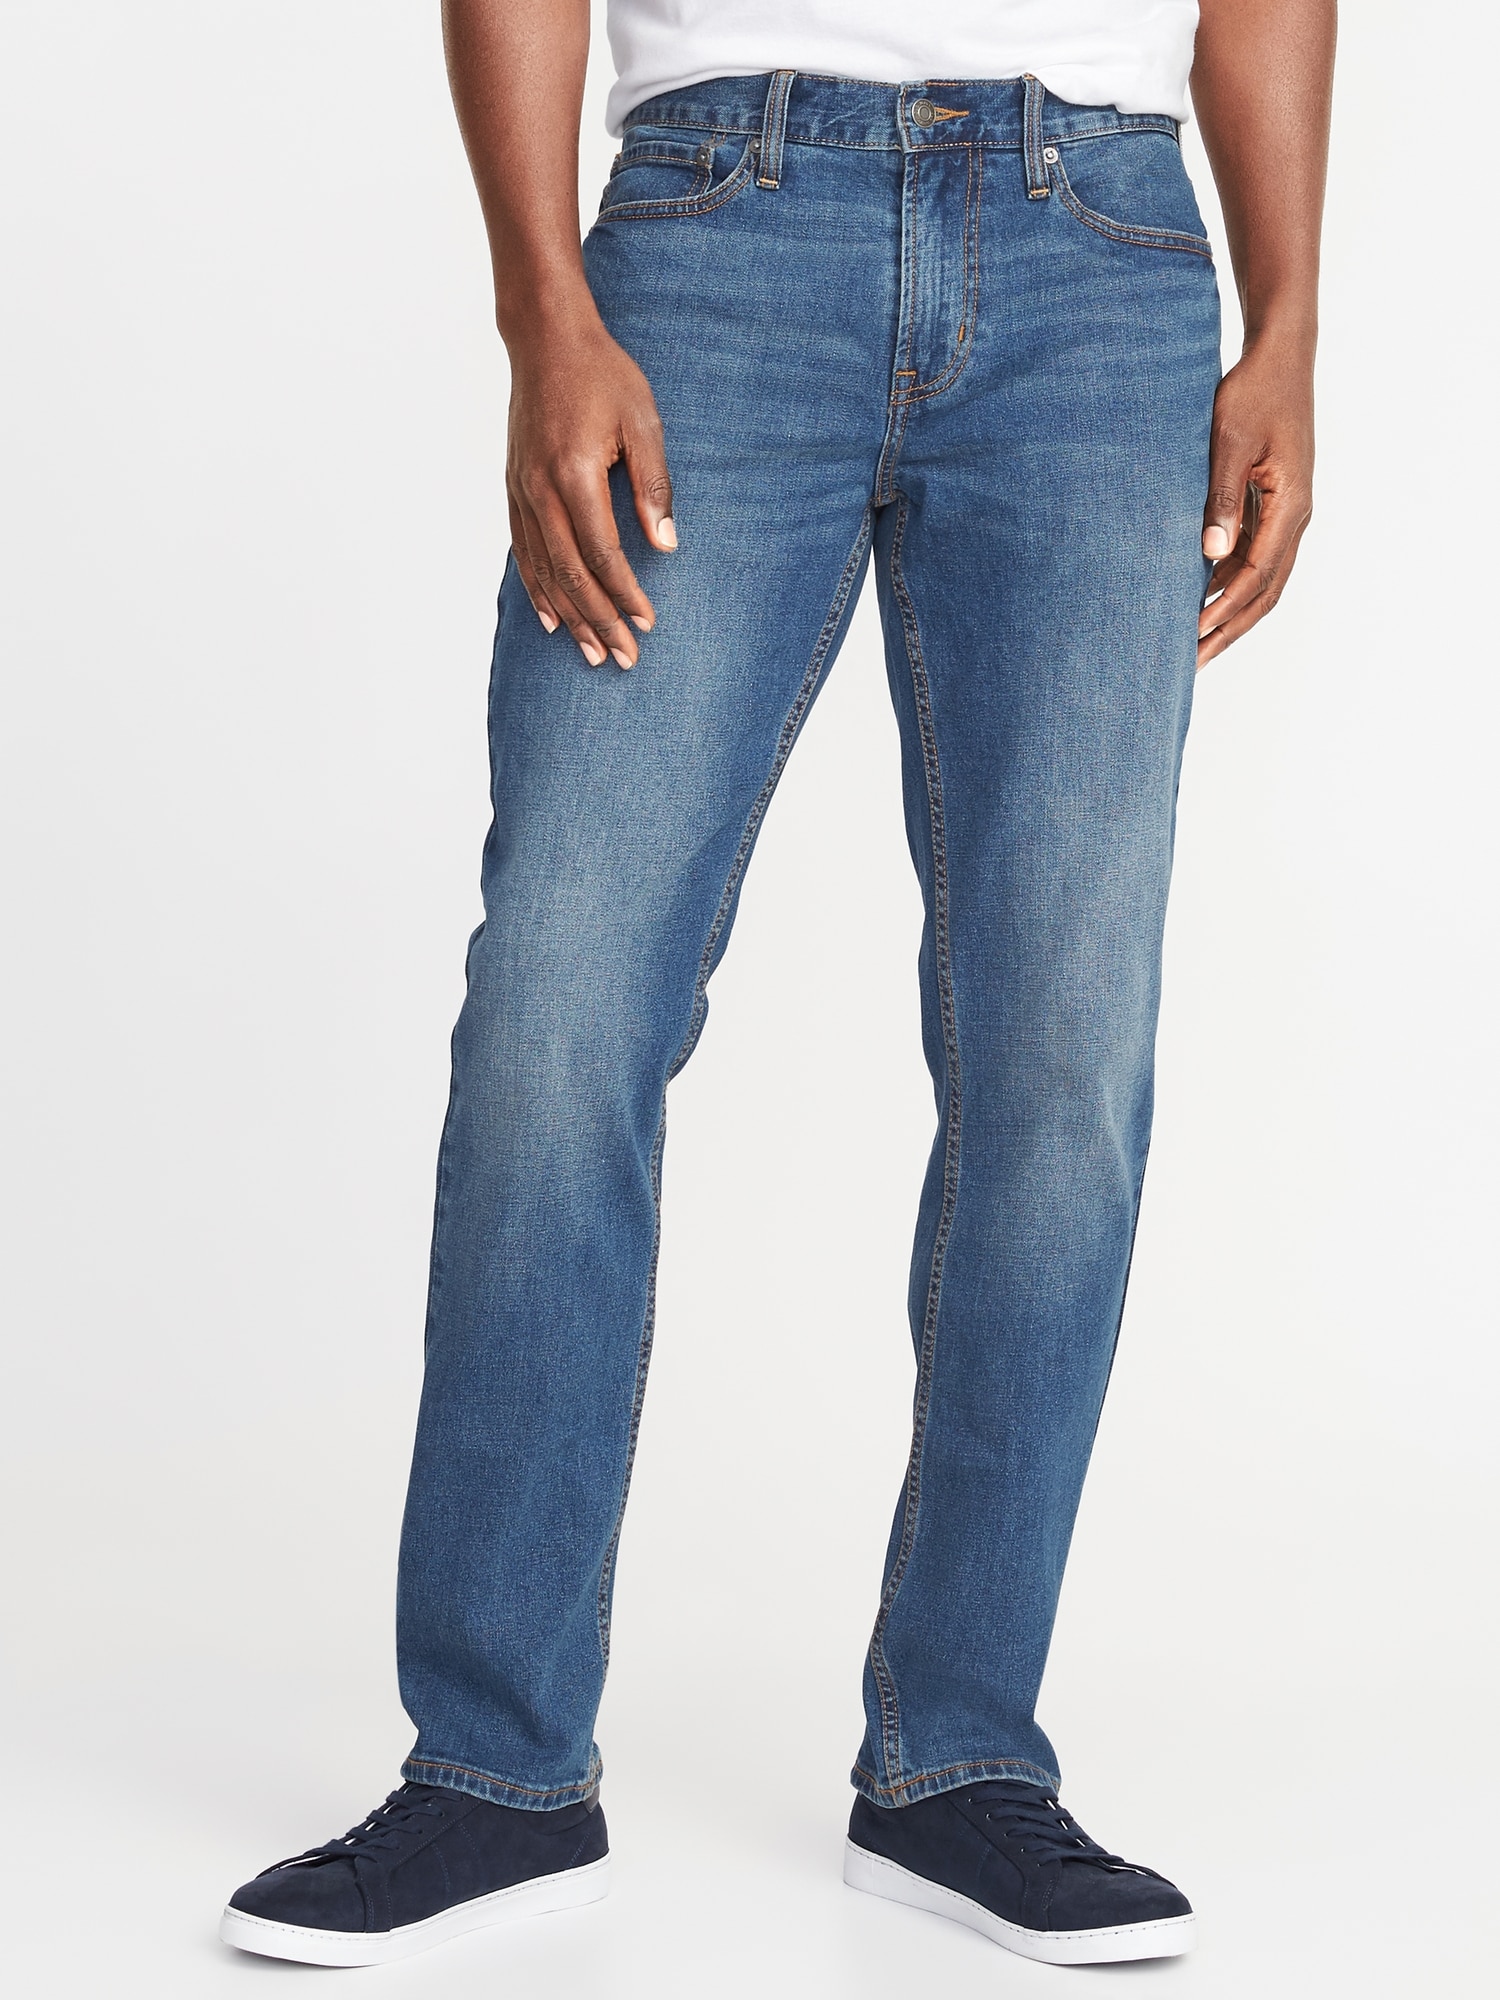 Straight Built-In Flex Jeans For Men